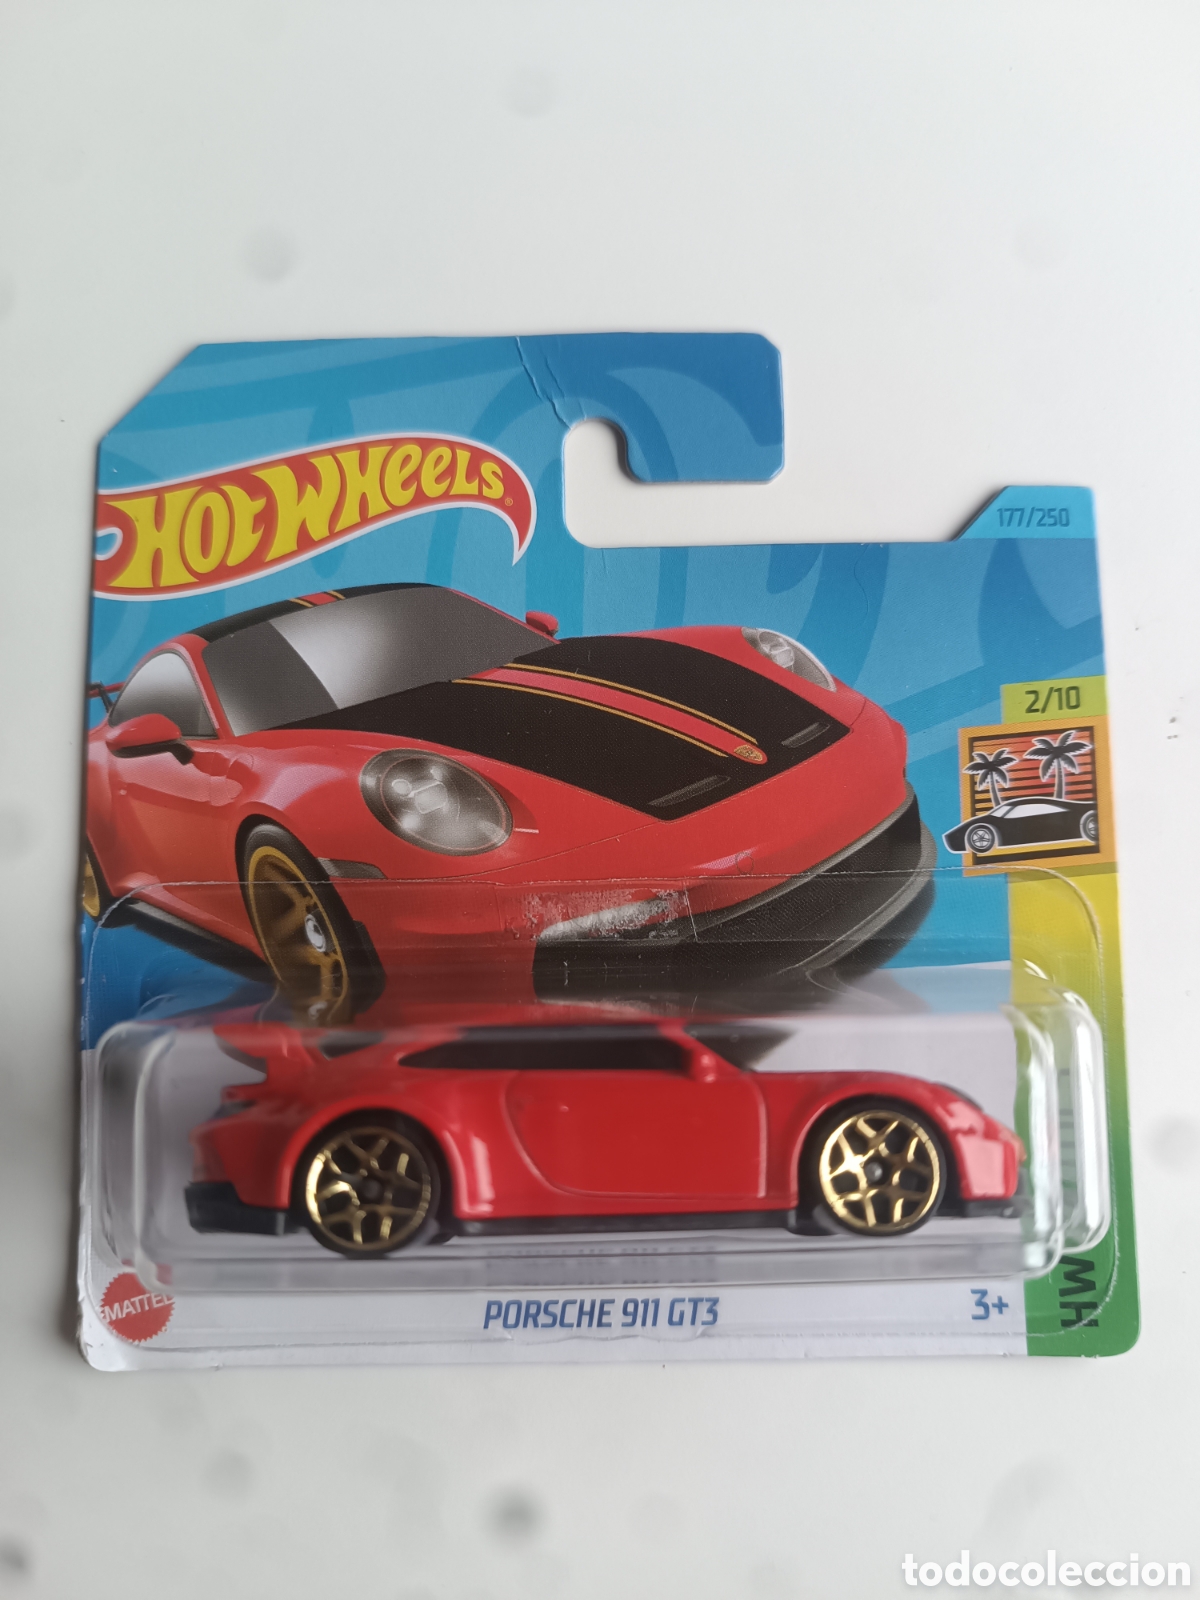 hot wheels porsche 911 gt3 rs rojo. coche colec - Acquista Modellini auto  in altre scale su todocoleccion